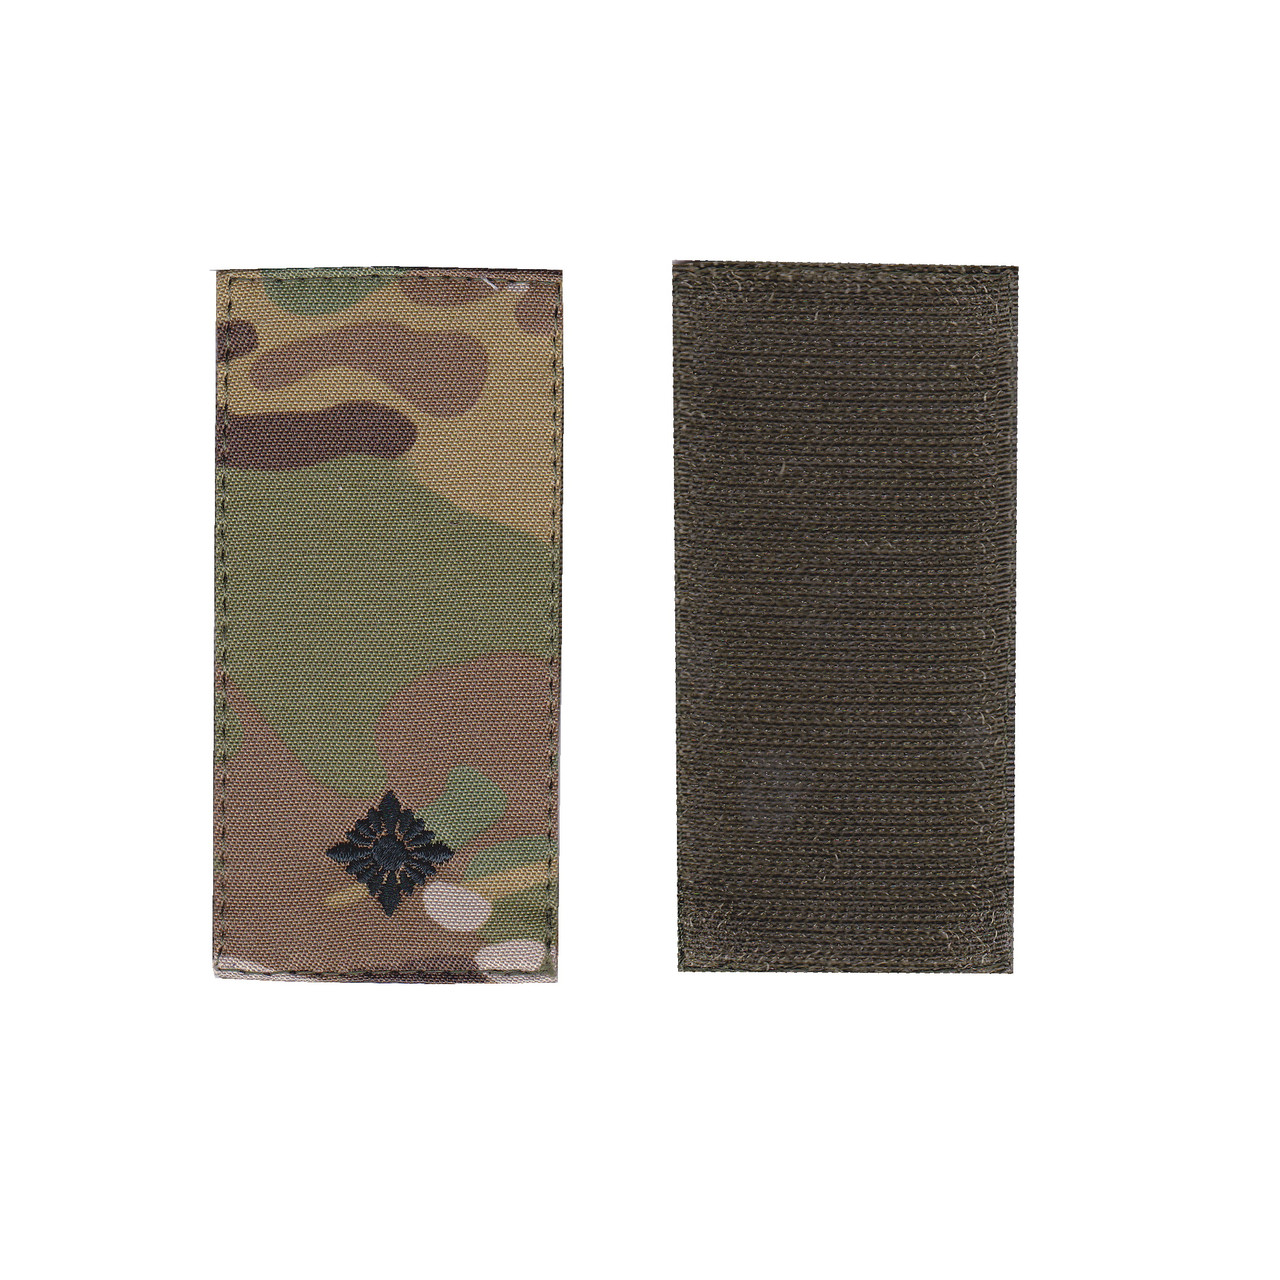 Погон молодший лейтенант військовий / армійський шеврон ЗСУ, чорний колір на мультикамі. 10 см * 5 см